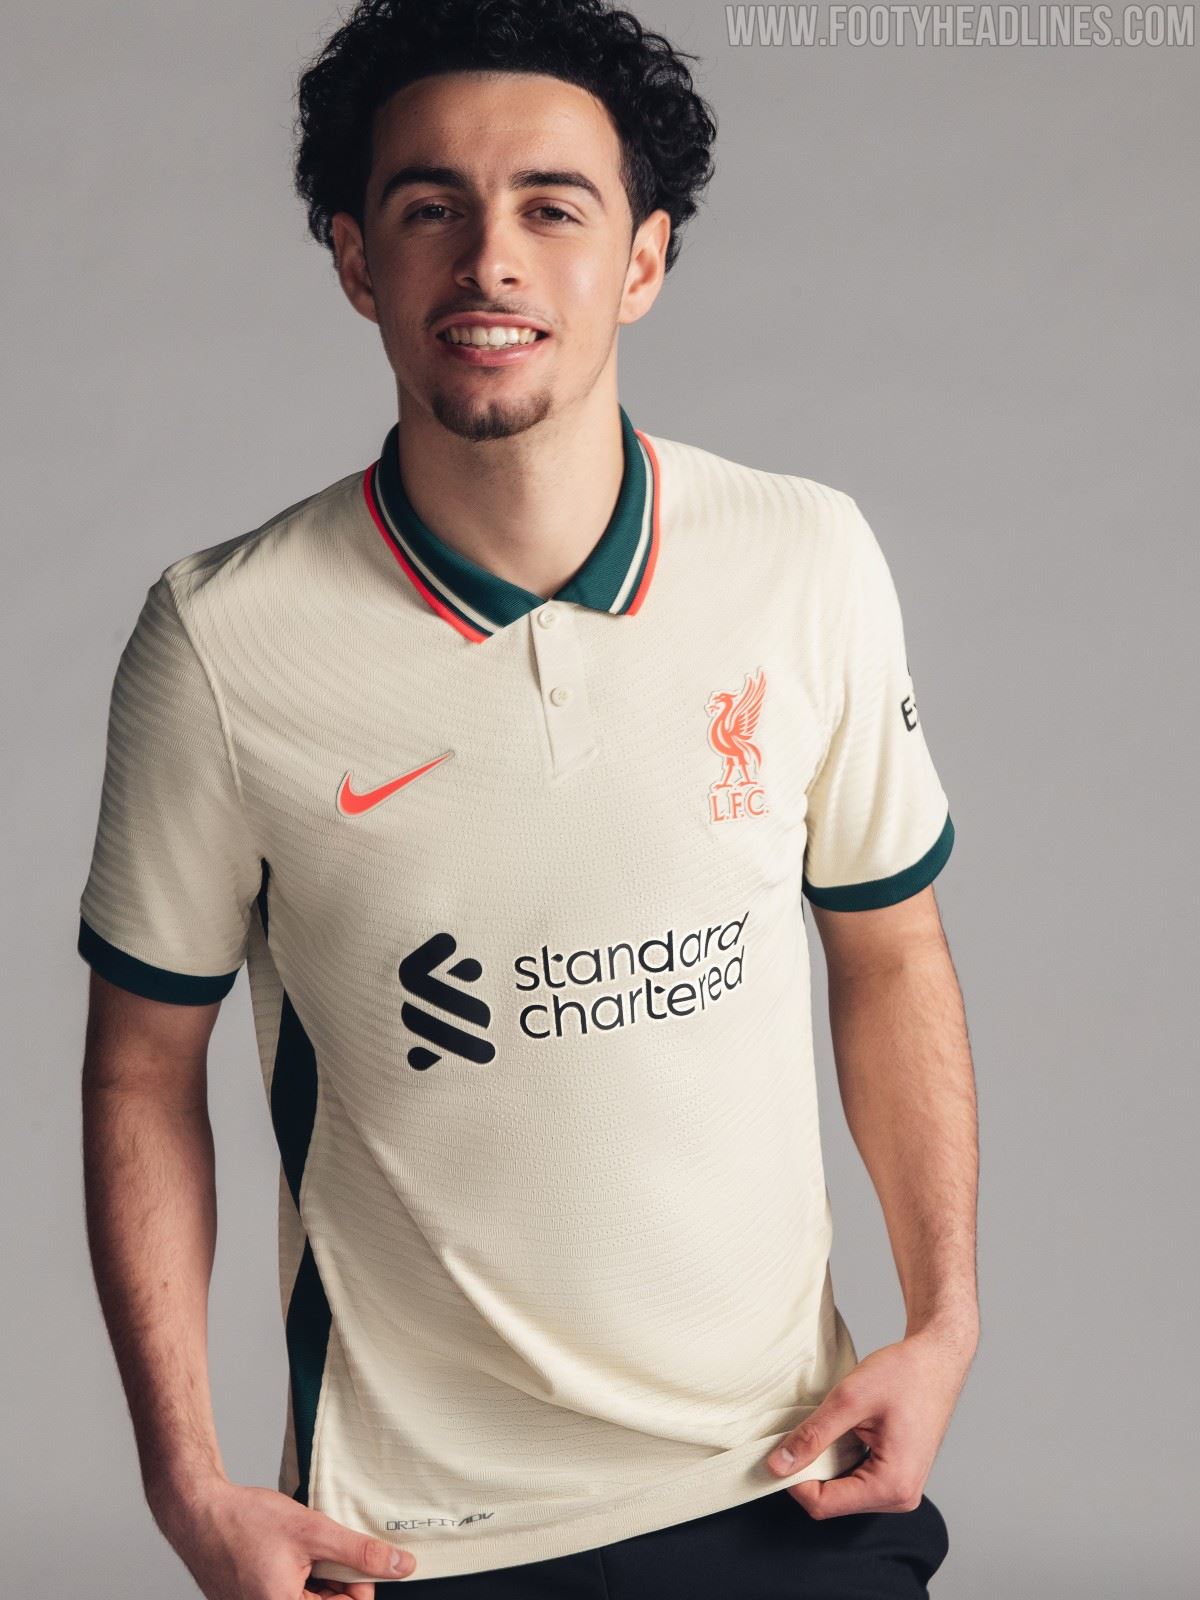 Nike Liverpool 21-22 Away Kit Released - Footy Headlines